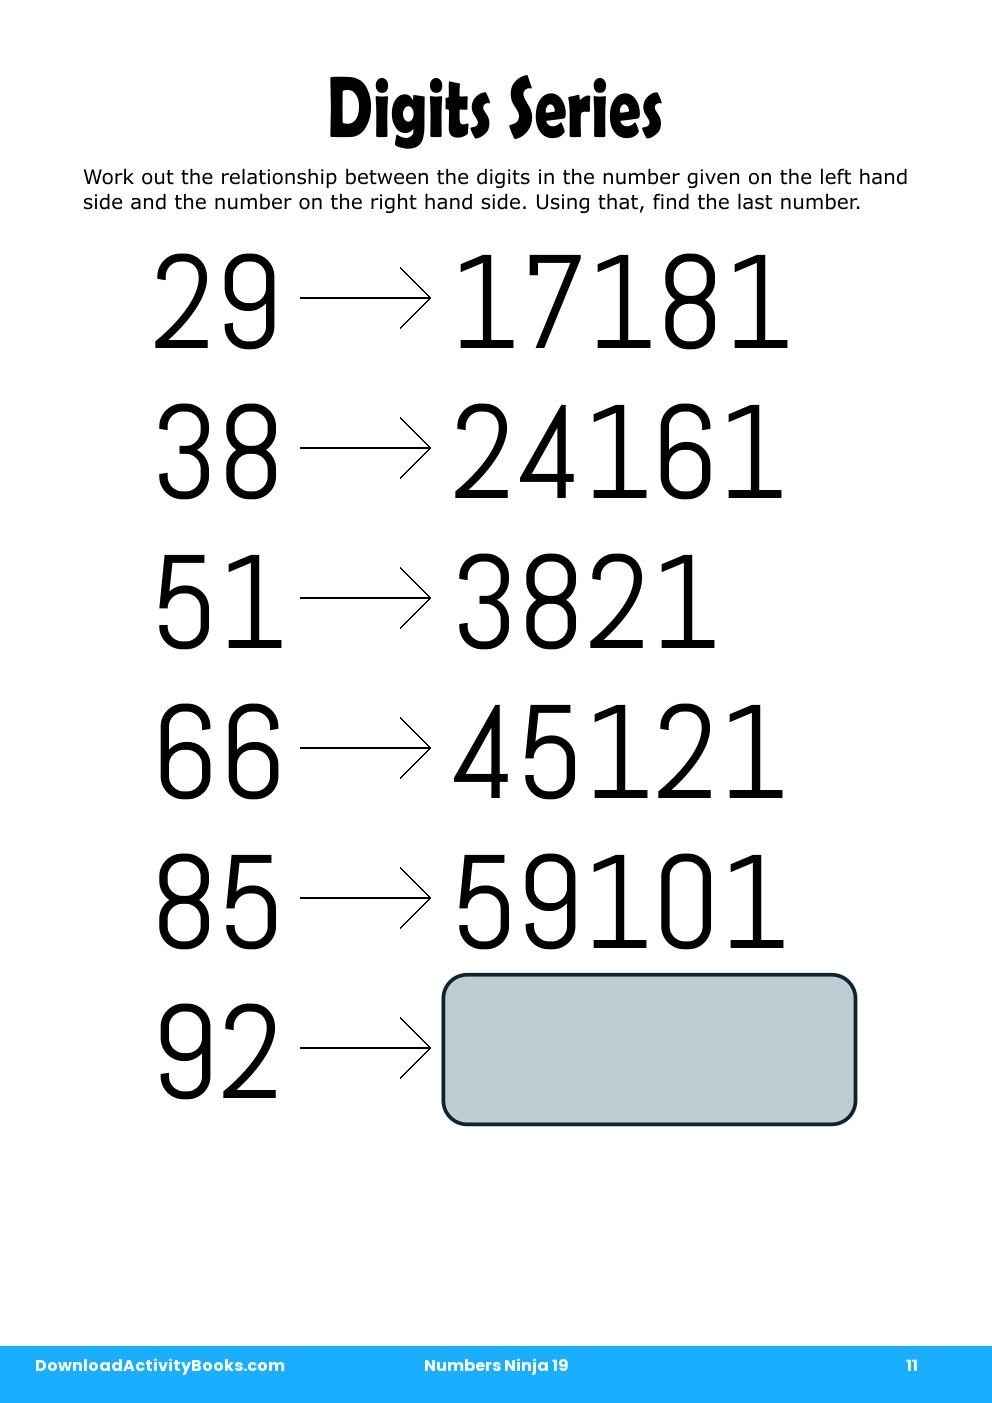 Digits Series in Numbers Ninja 19